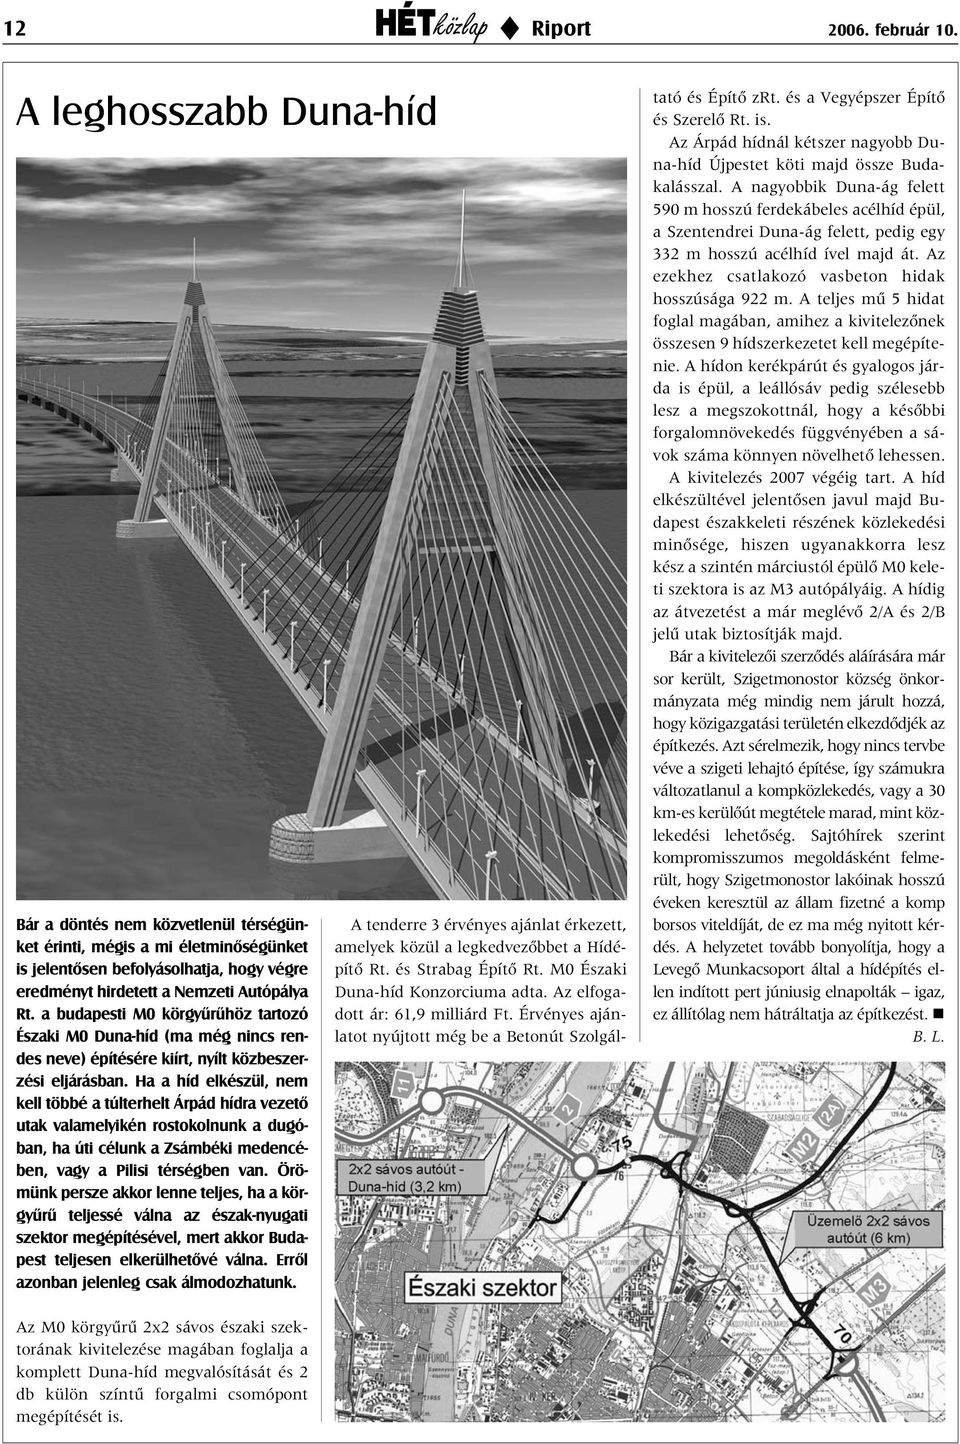 a budapesti M0 körgyûrûhöz tartozó Északi M0 Duna-híd (ma még nincs rendes neve) építésére kiírt, nyílt közbeszerzési eljárásban.